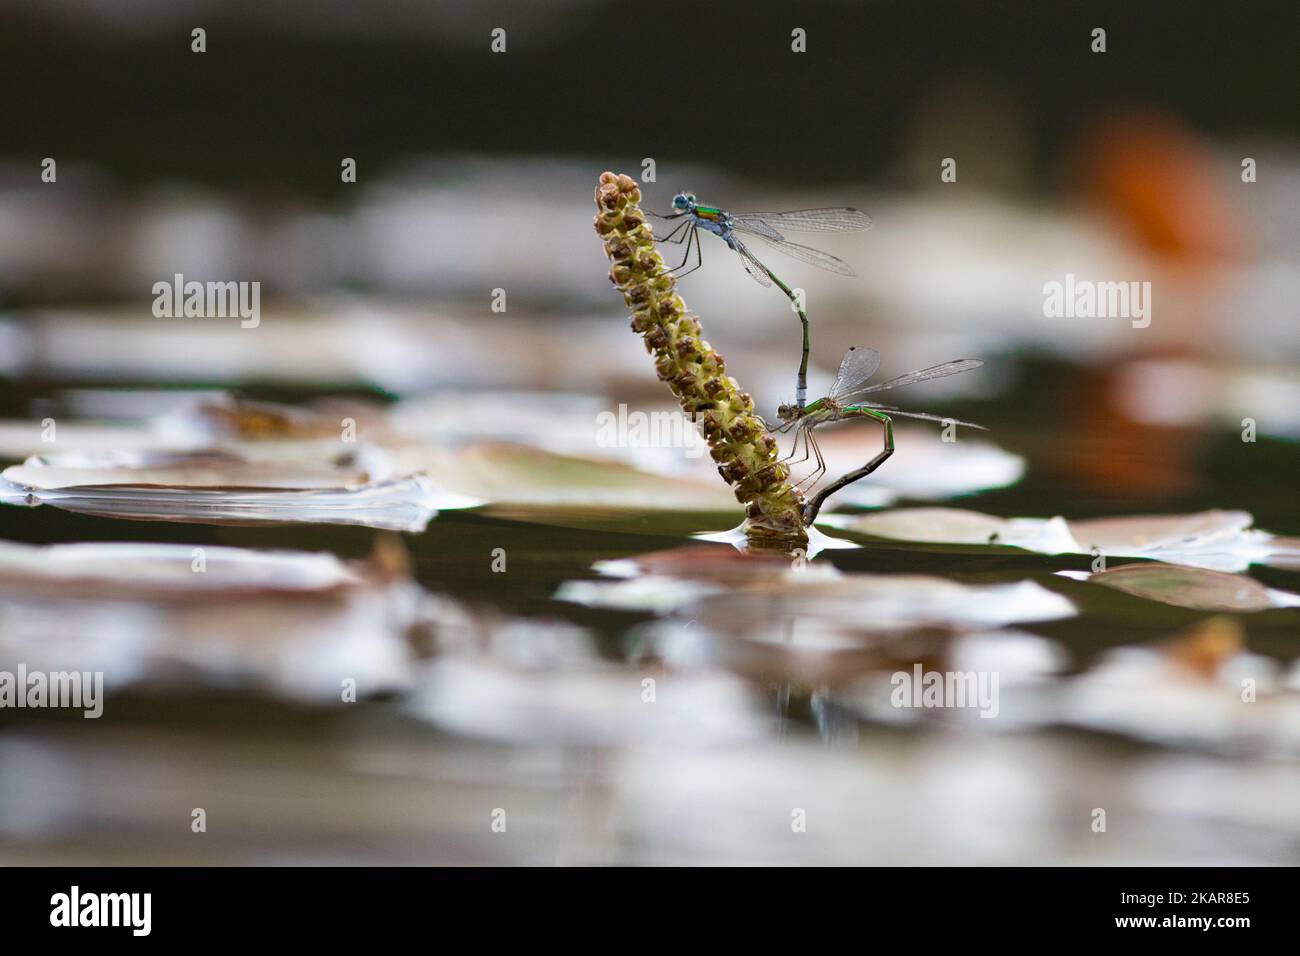 Libelle (Odenata) sitzt auf einem Blatt. Ein Insekt aus Norwegen. Sieht aus wie ein Hubschrauber. Das Insekt fliegt nahe am Wasser und legt die Eier ab. Stockfoto